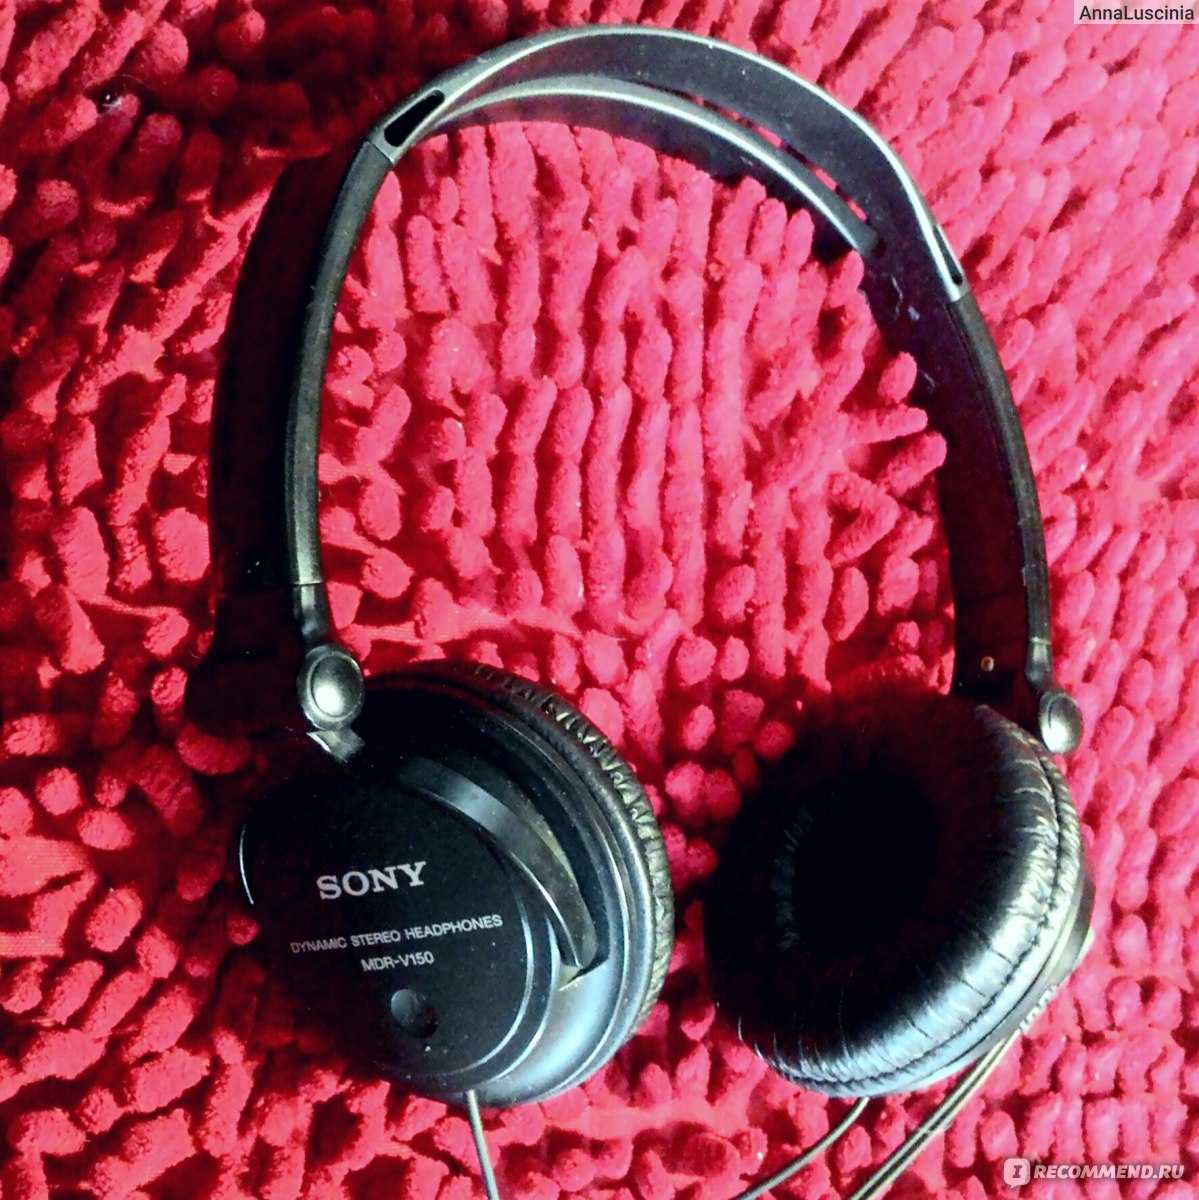 Sony mdr-v150